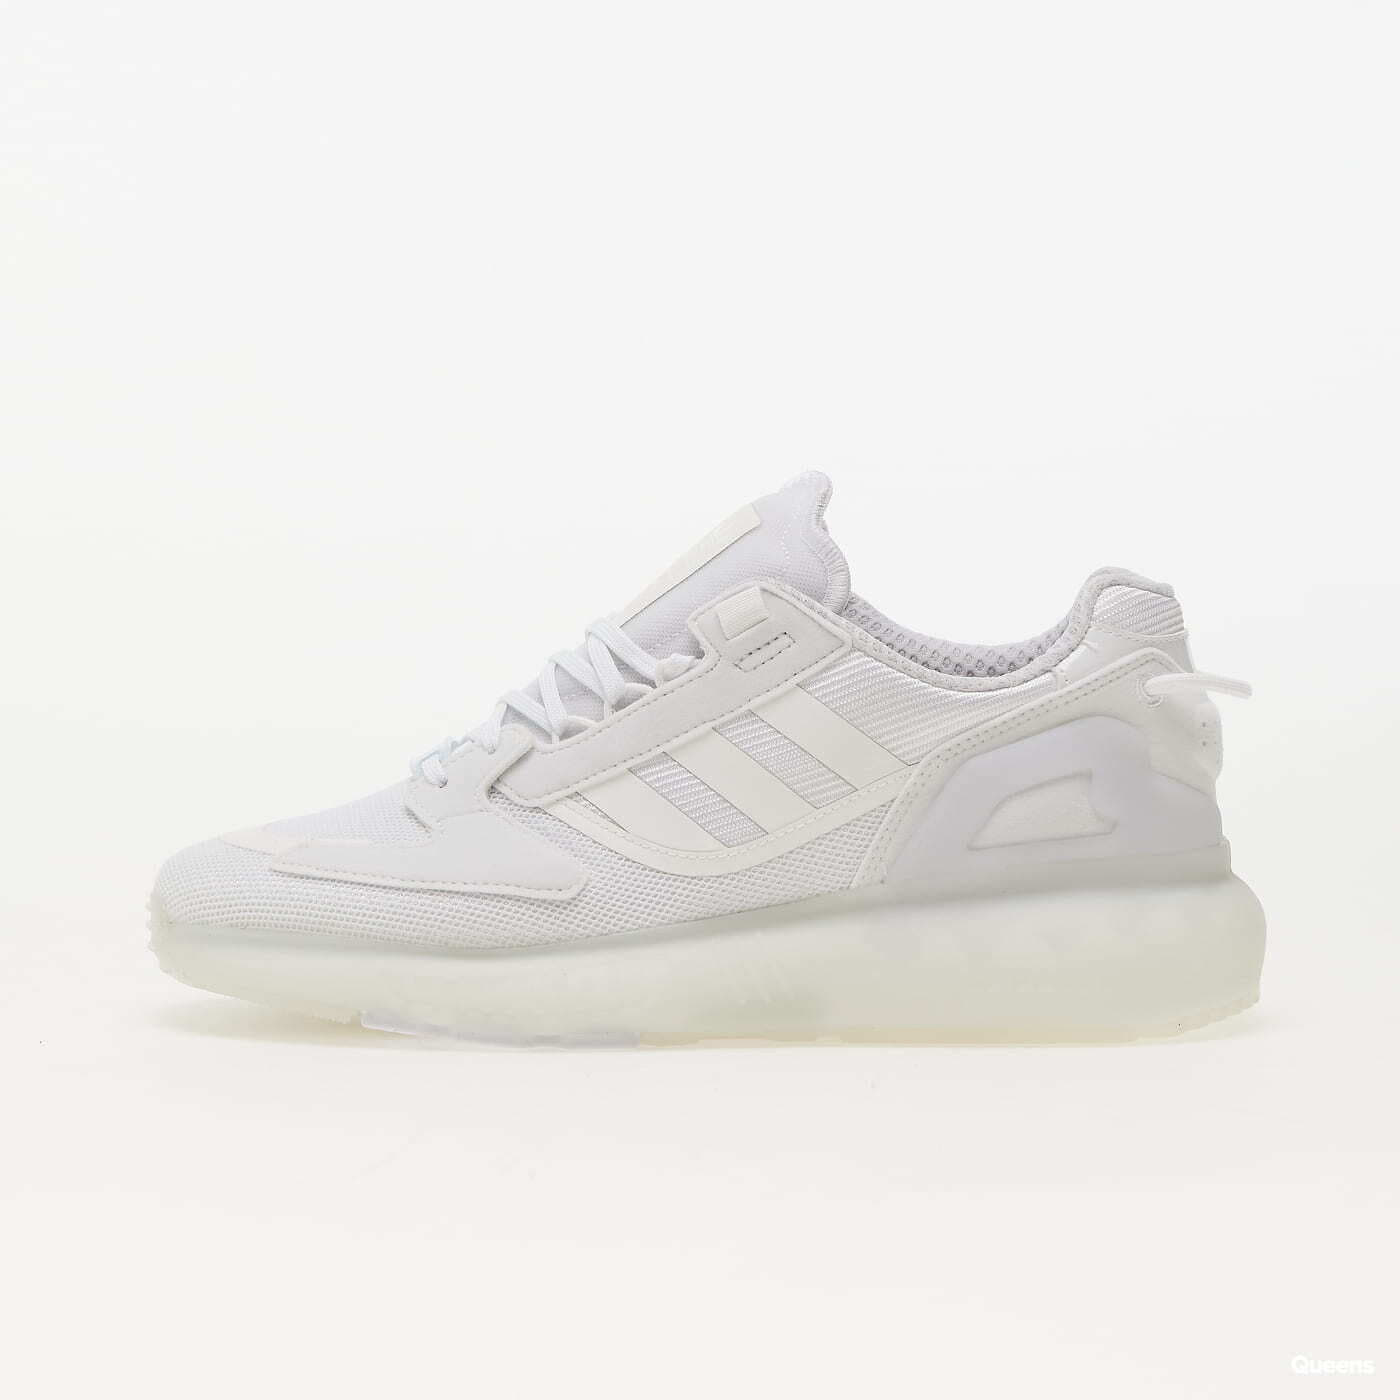 Herren Sneaker und Schuhe adidas Originals ZX 5K Boost white/ ftw white/ grey one